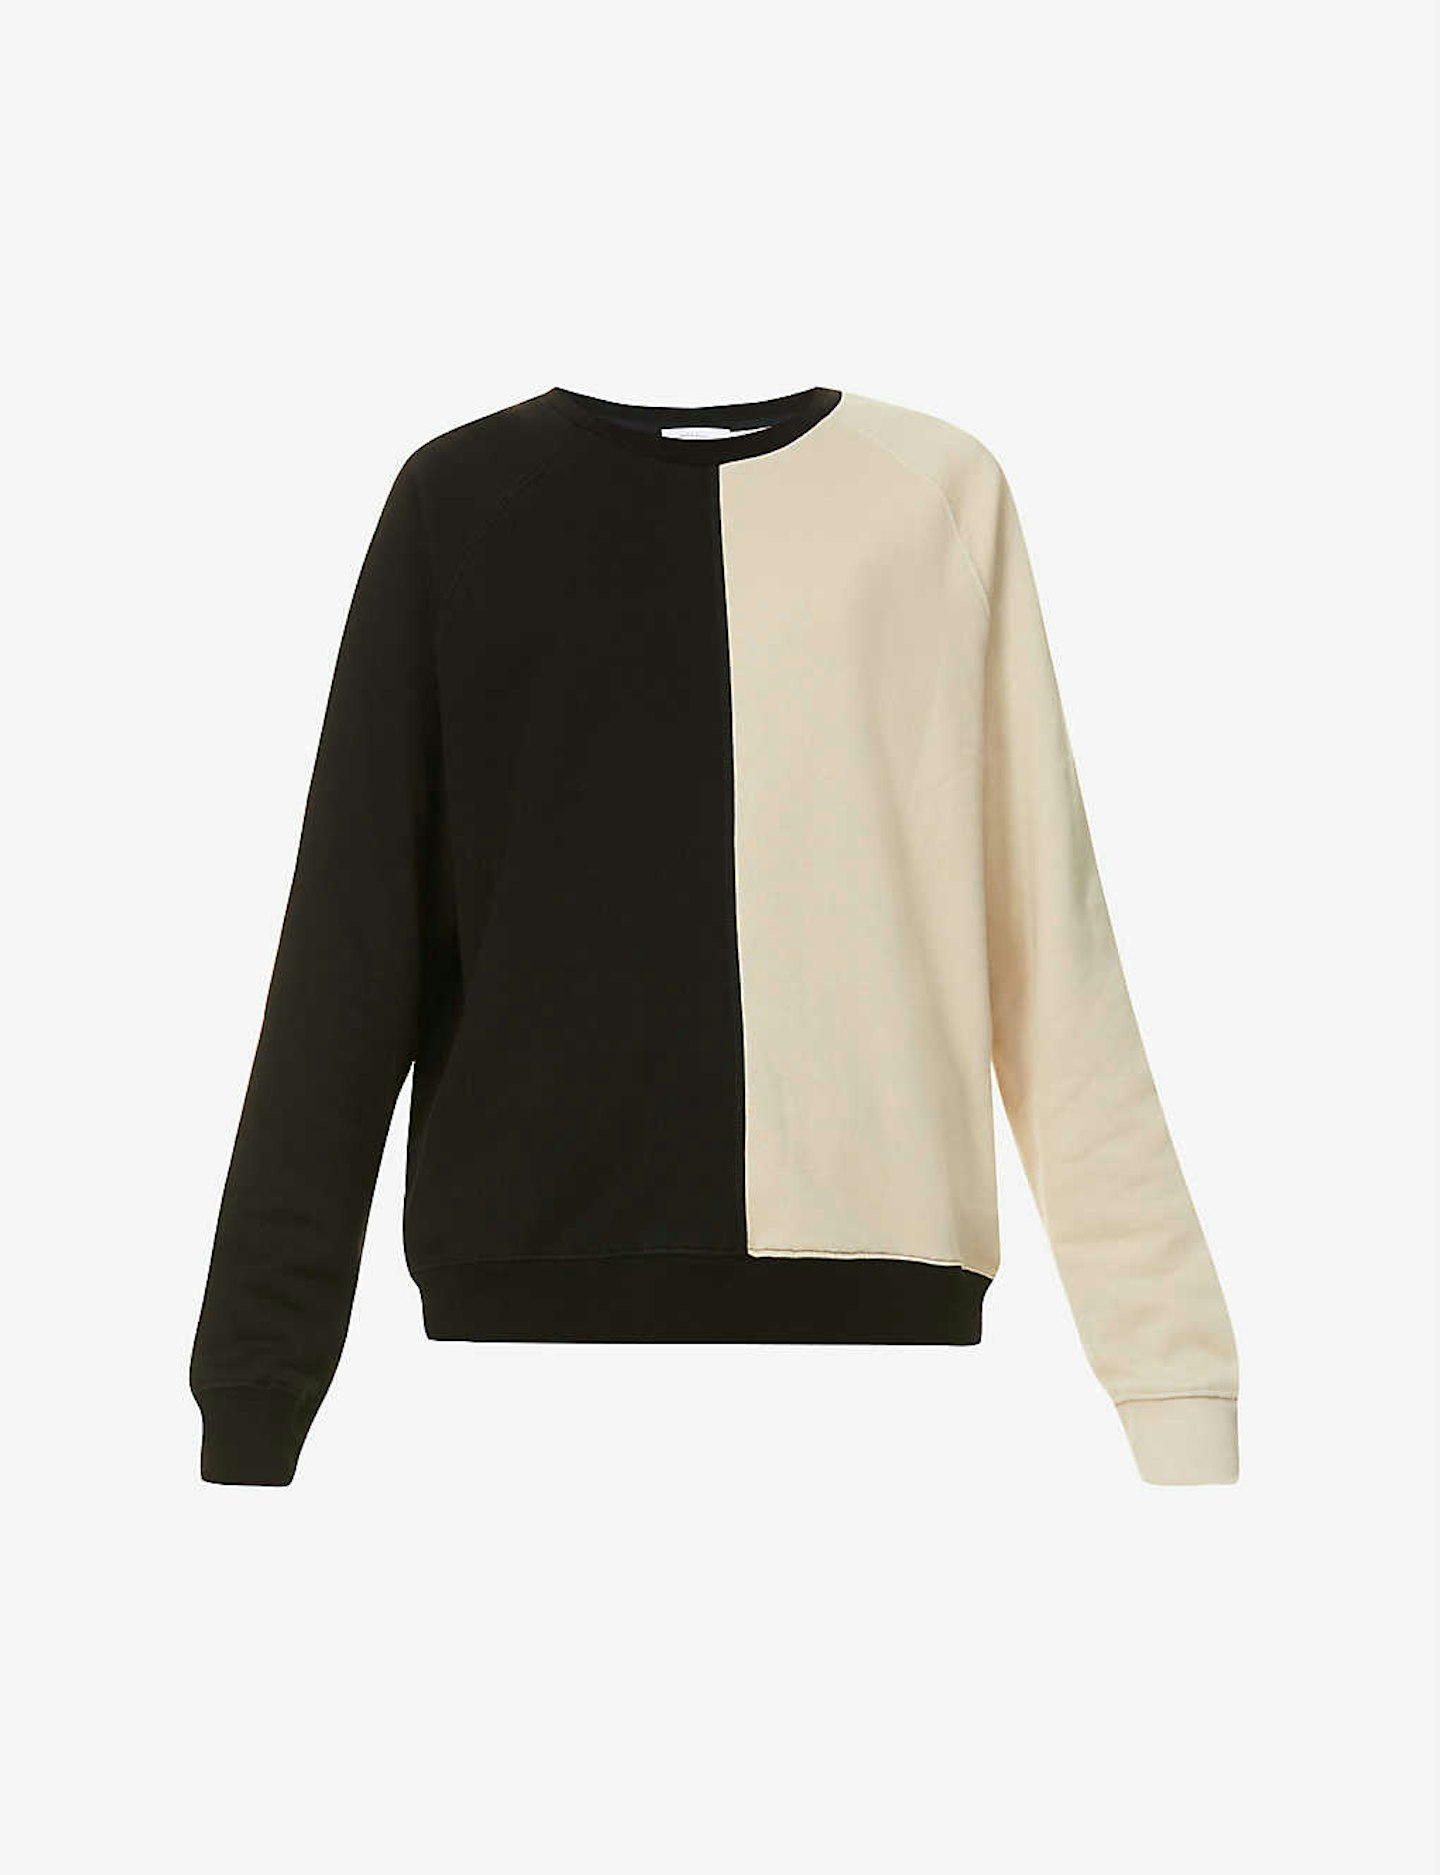 Ninety Percent, Two-Tone Organic Cotton Jersey Sweatshirt, £130